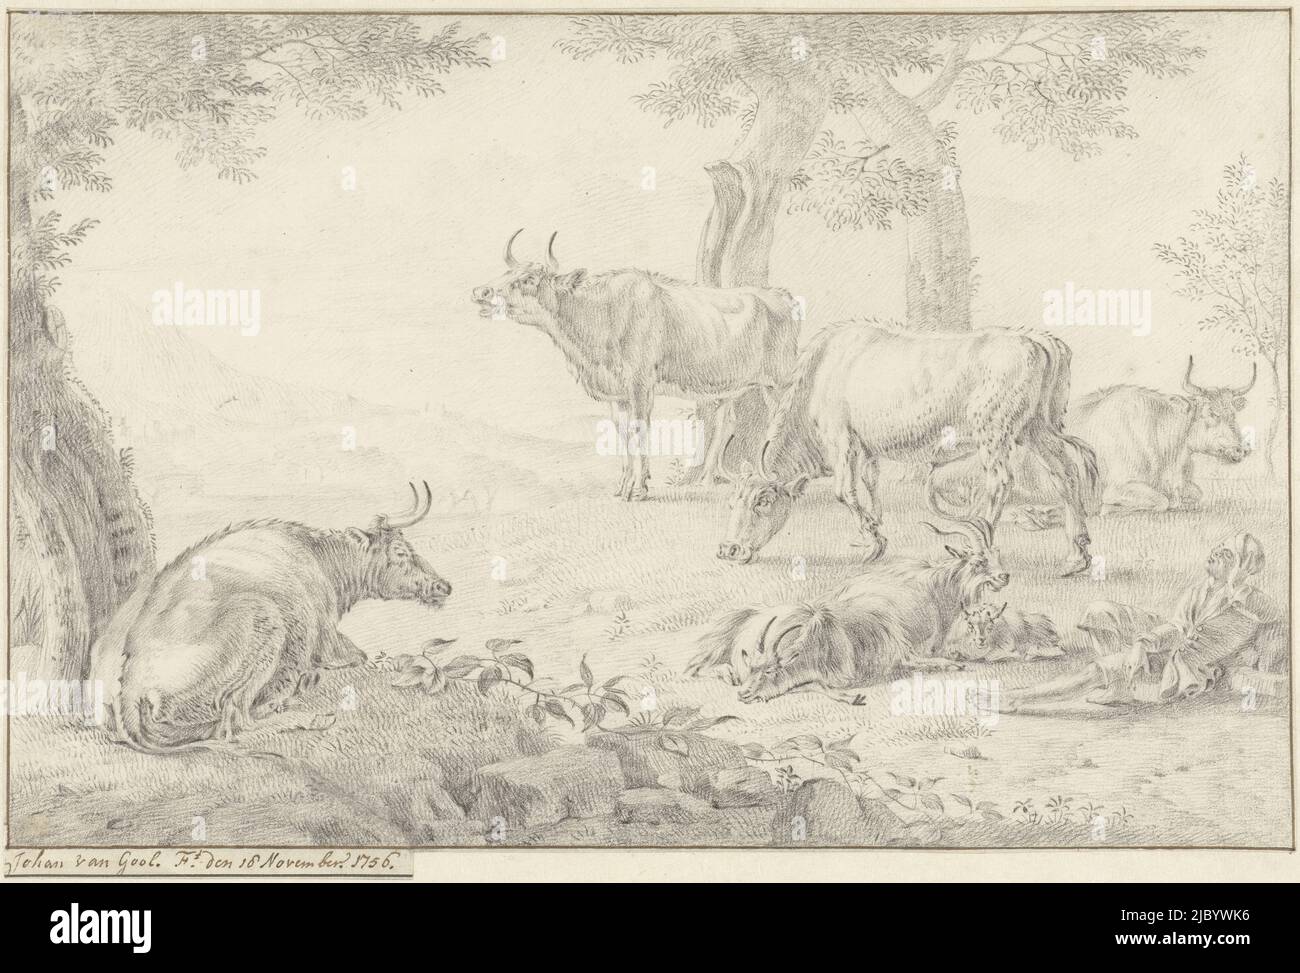 Paysage avec bétail, Jan van Gool, 1756, rapporteur pour avis: Jan van Gool, 18-Nov-1756, papier, h 201 mm × l 307 mm Banque D'Images